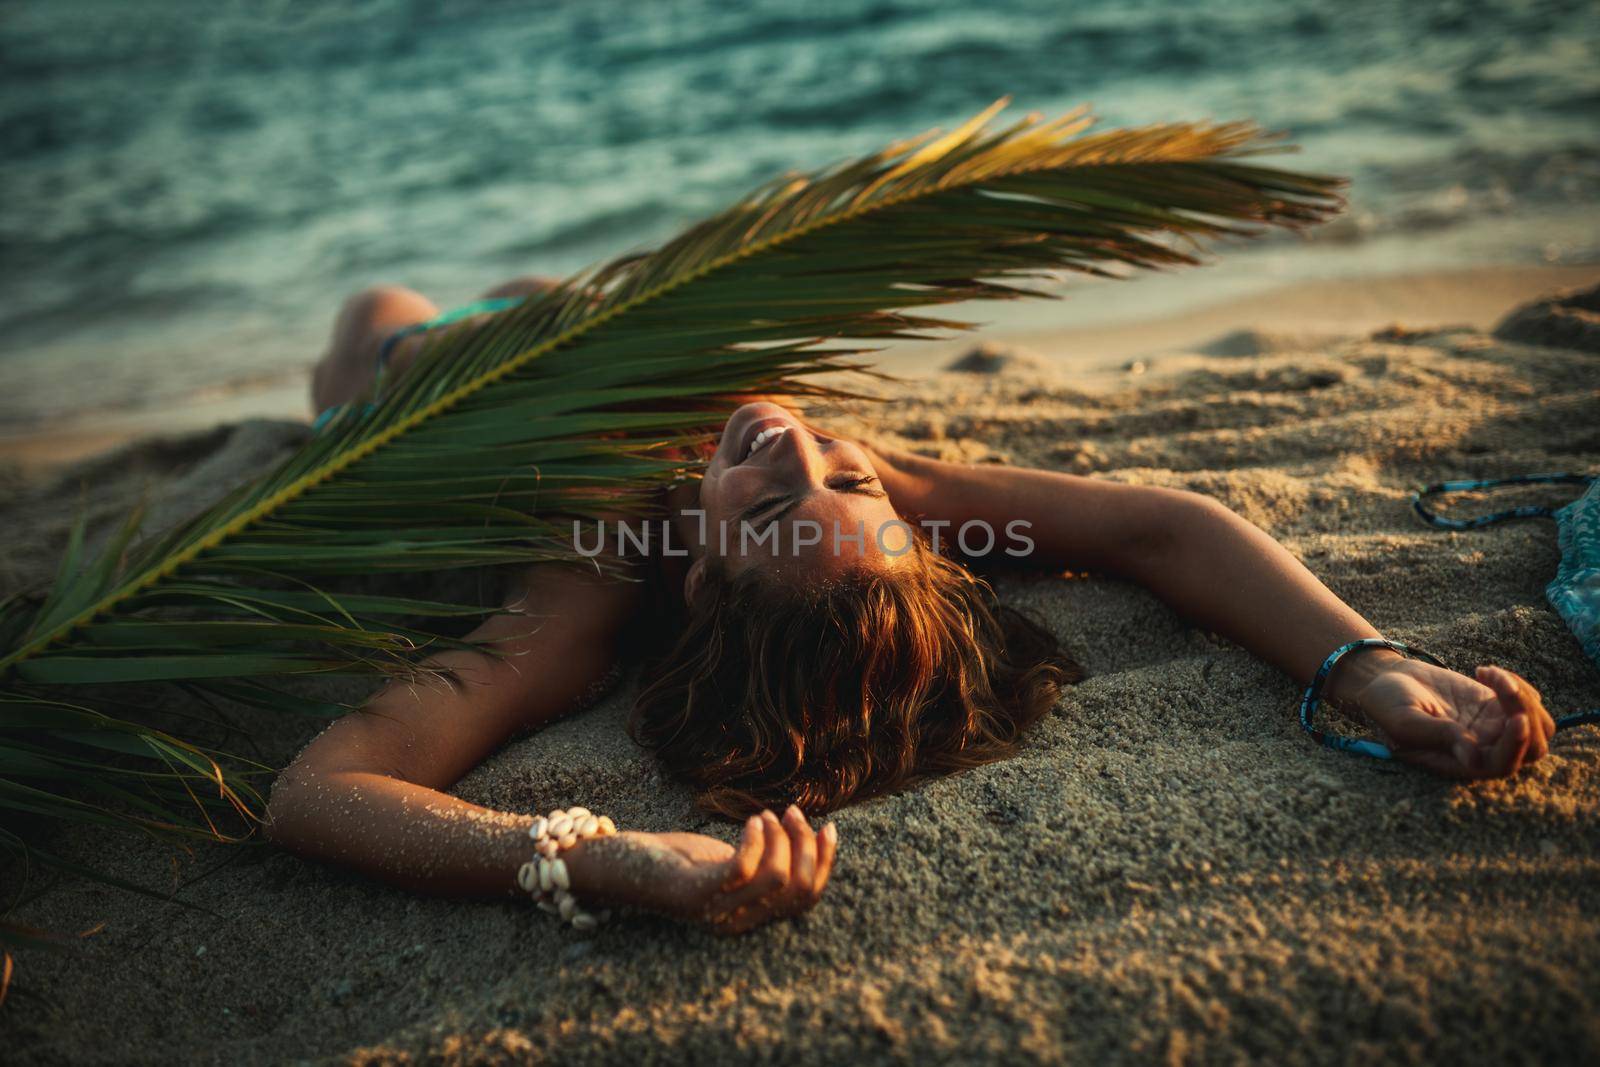 Sea, Sun And Summer Fun by MilanMarkovic78